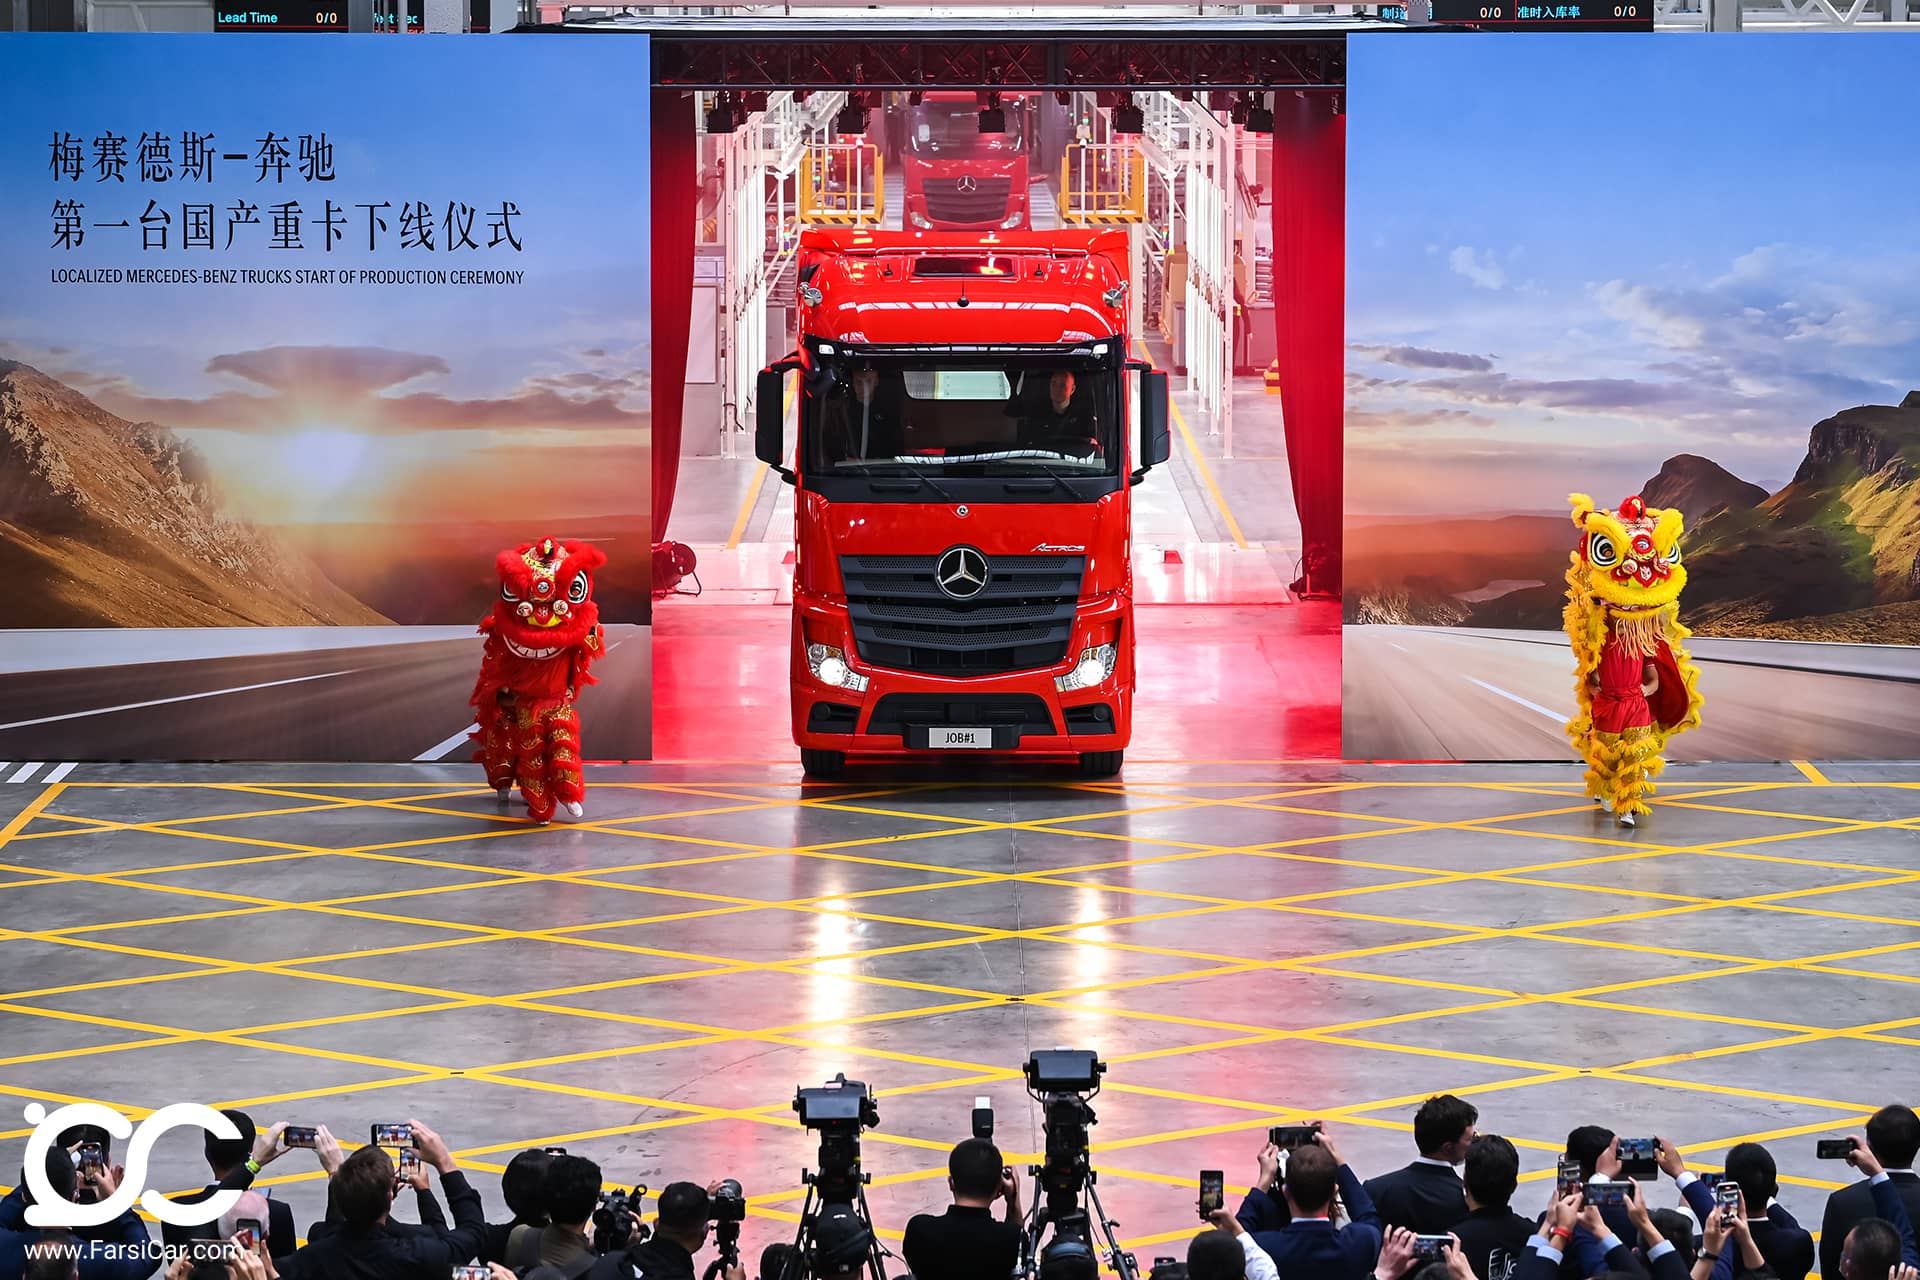 آغاز تولید کامیون های کشنده مرسدس-بنز آکتروس در چین